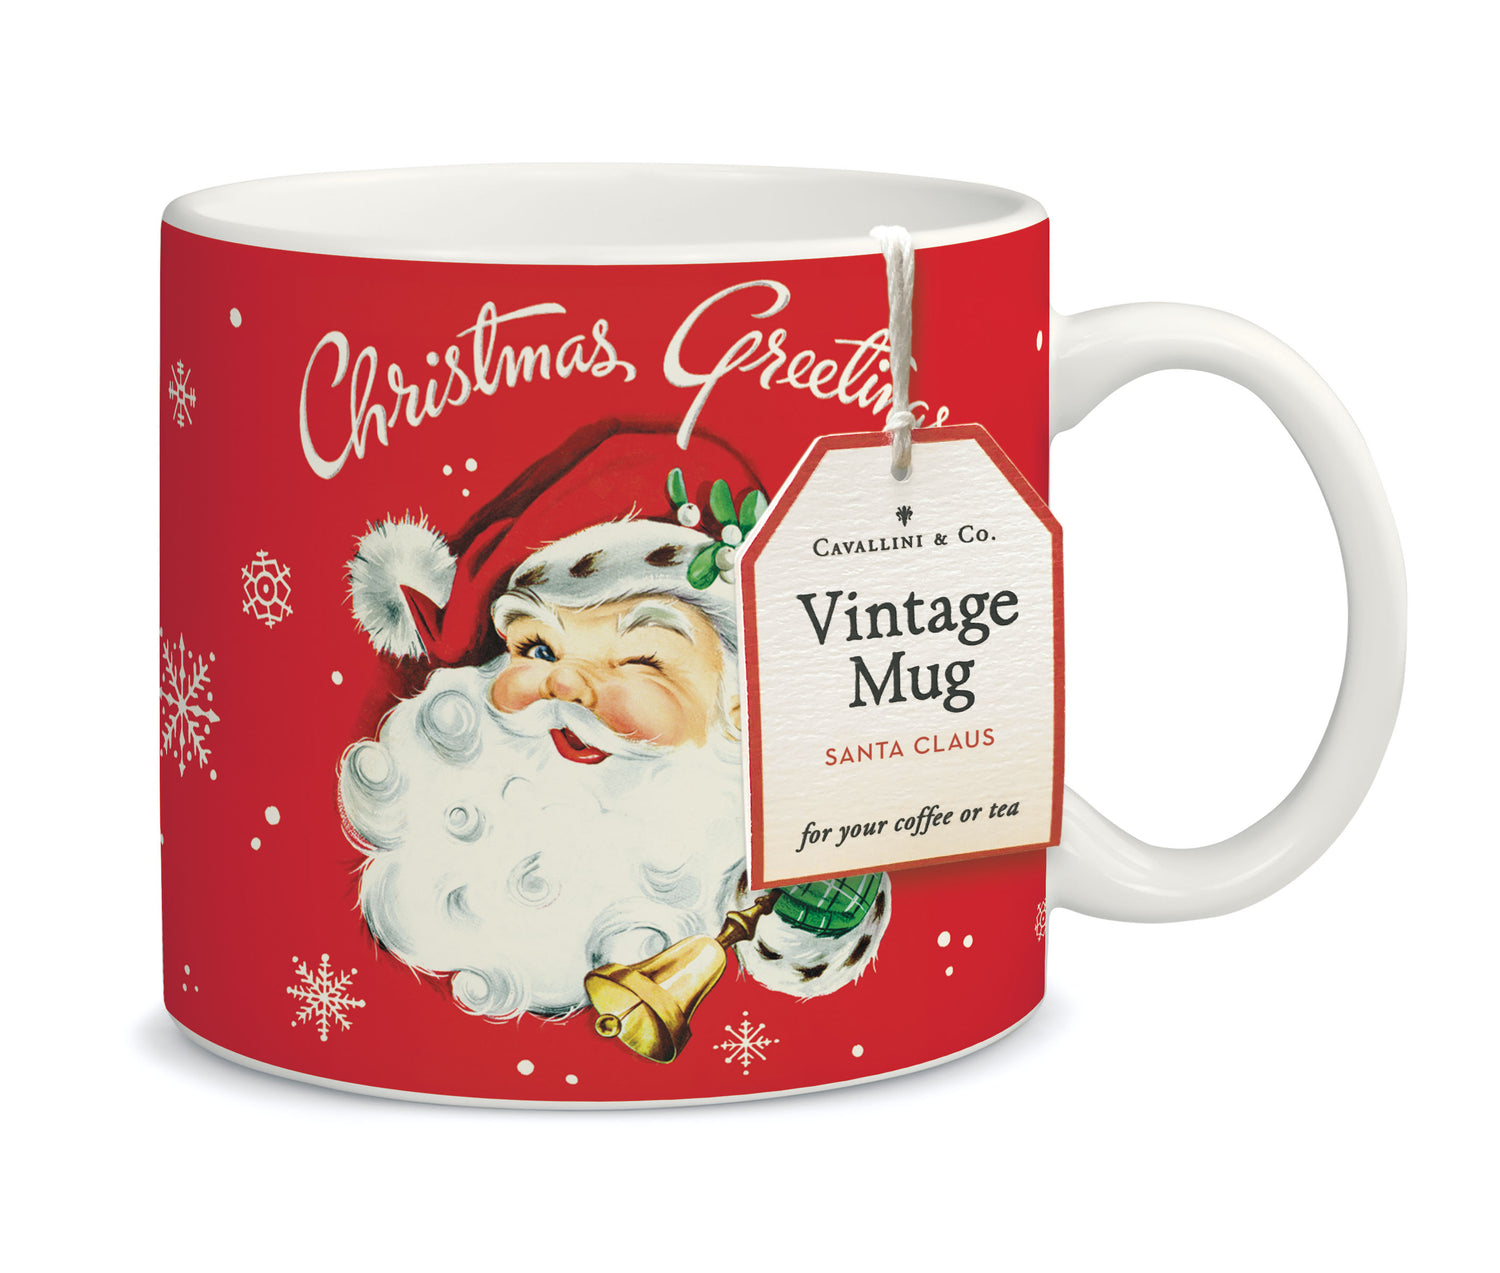 Christmas Santa Ceramic Mug